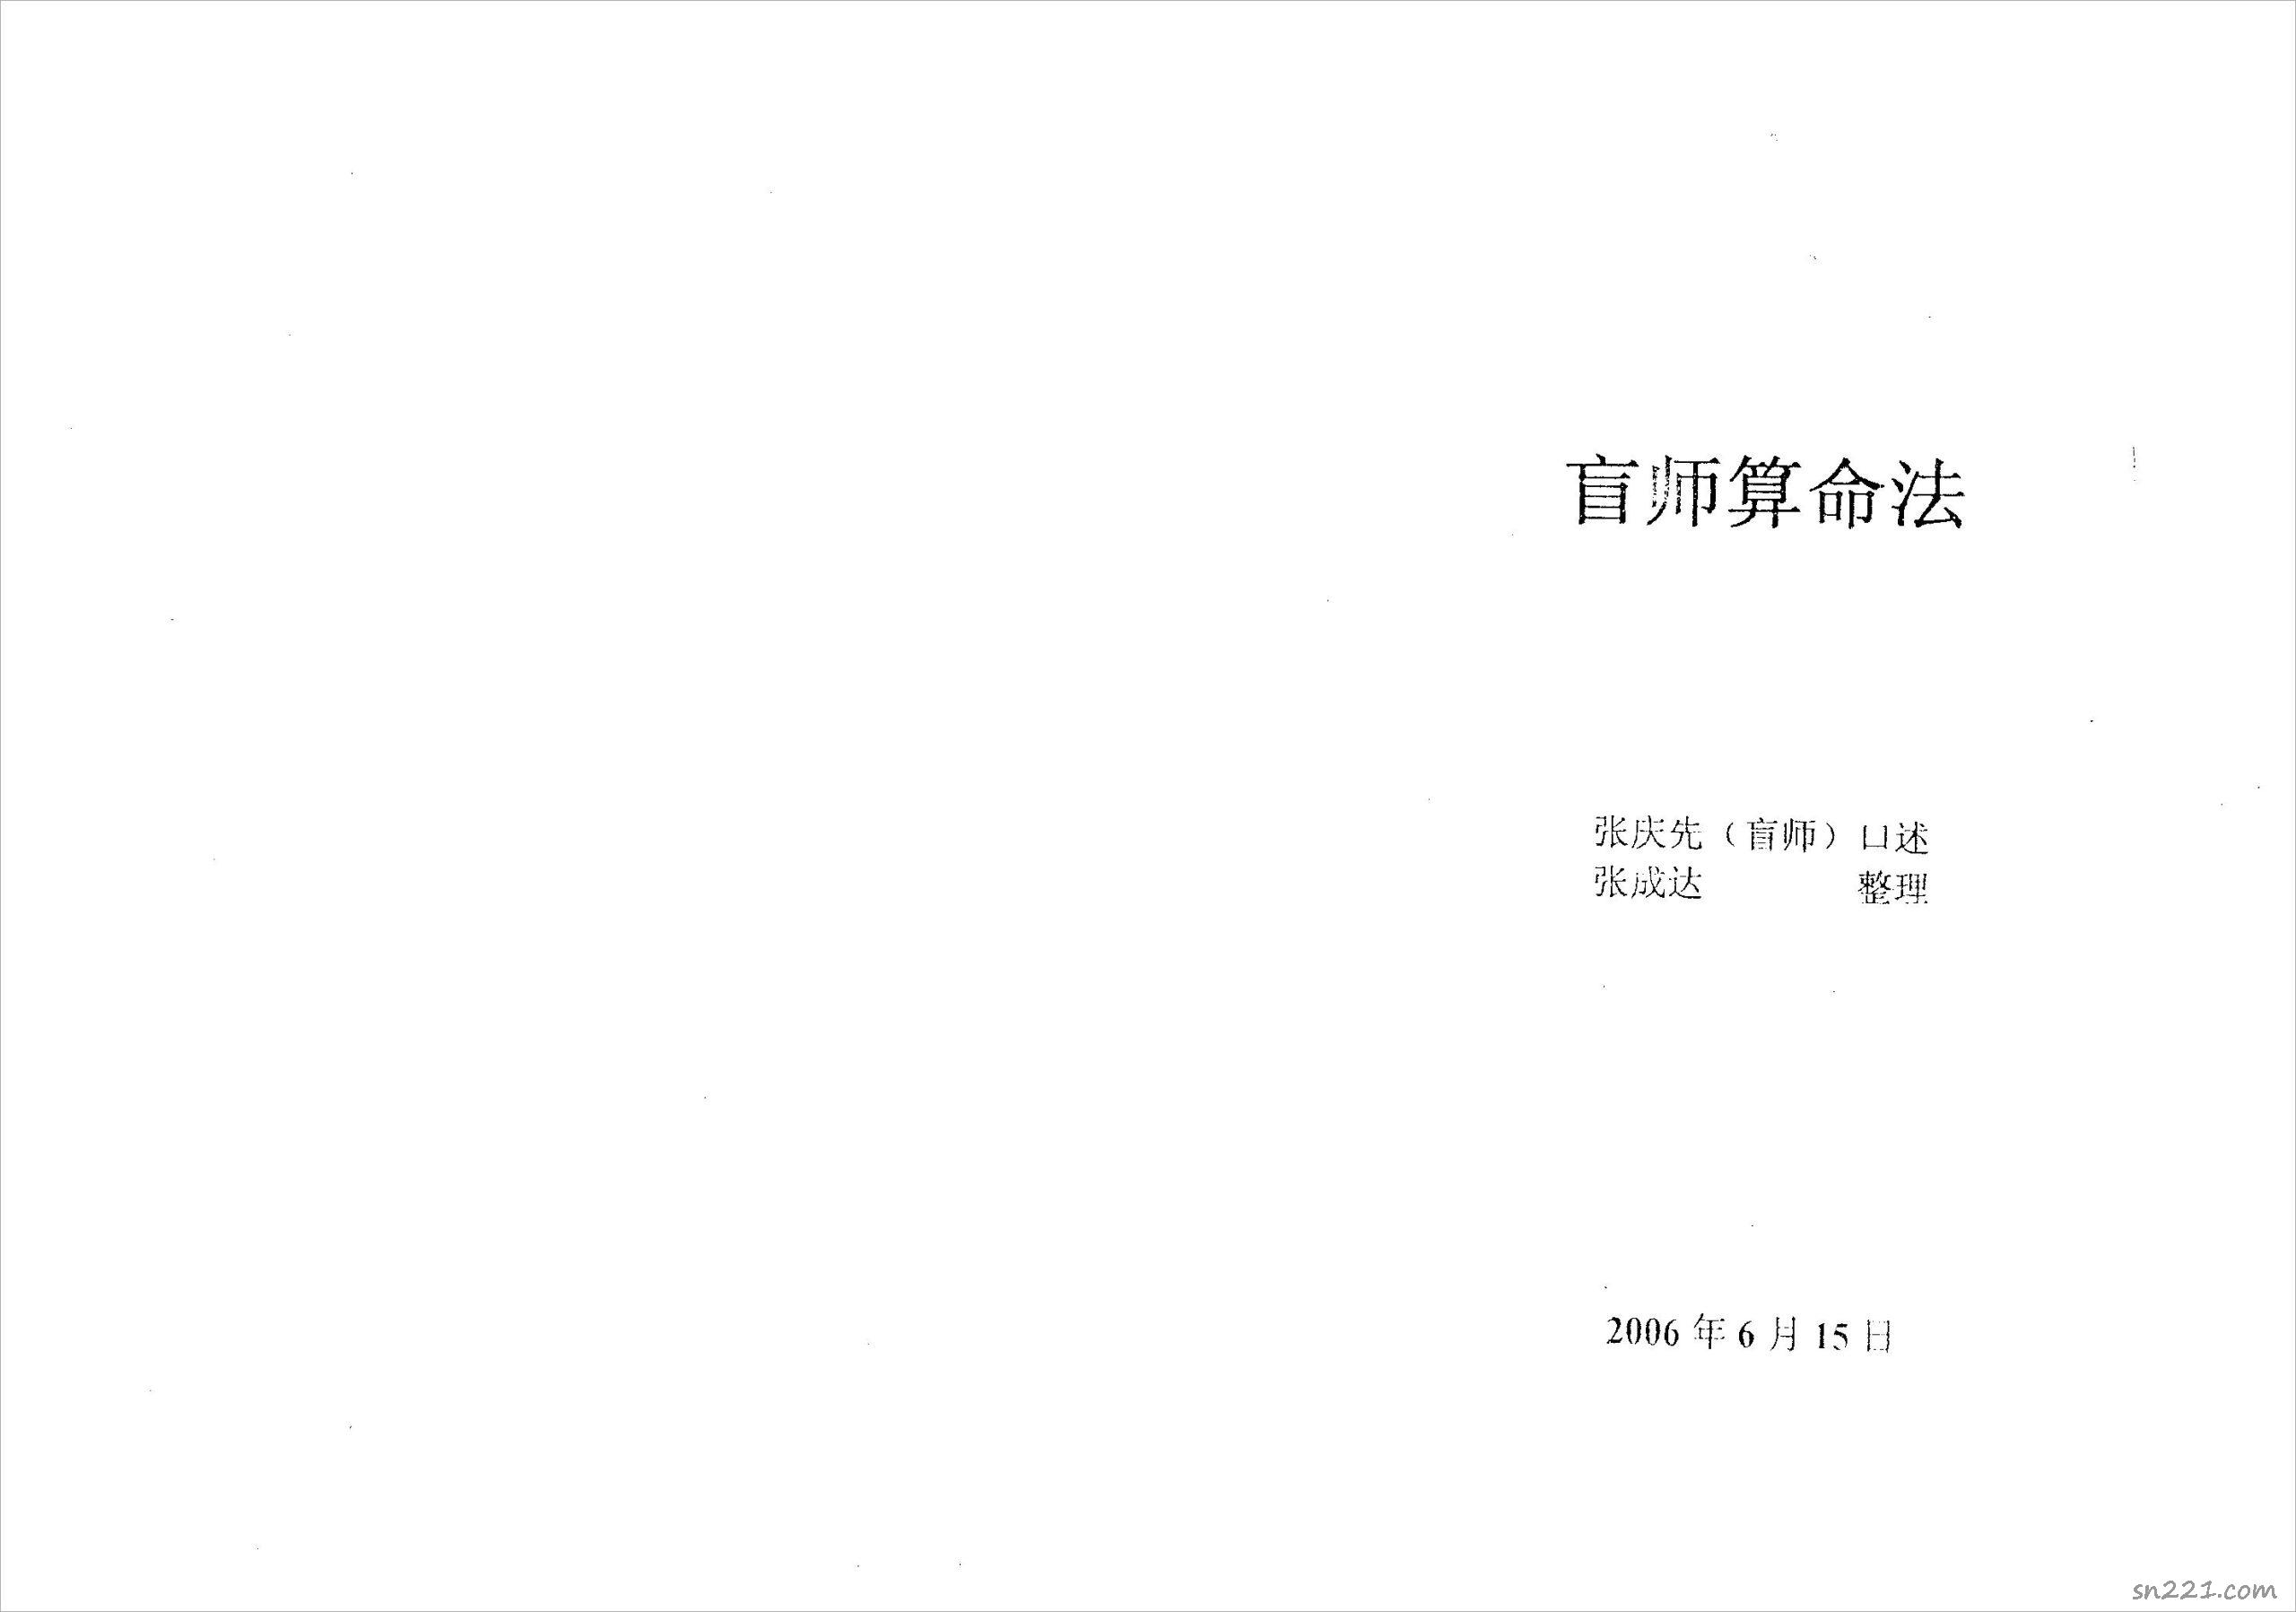 張成達-盲師算命法.pdf